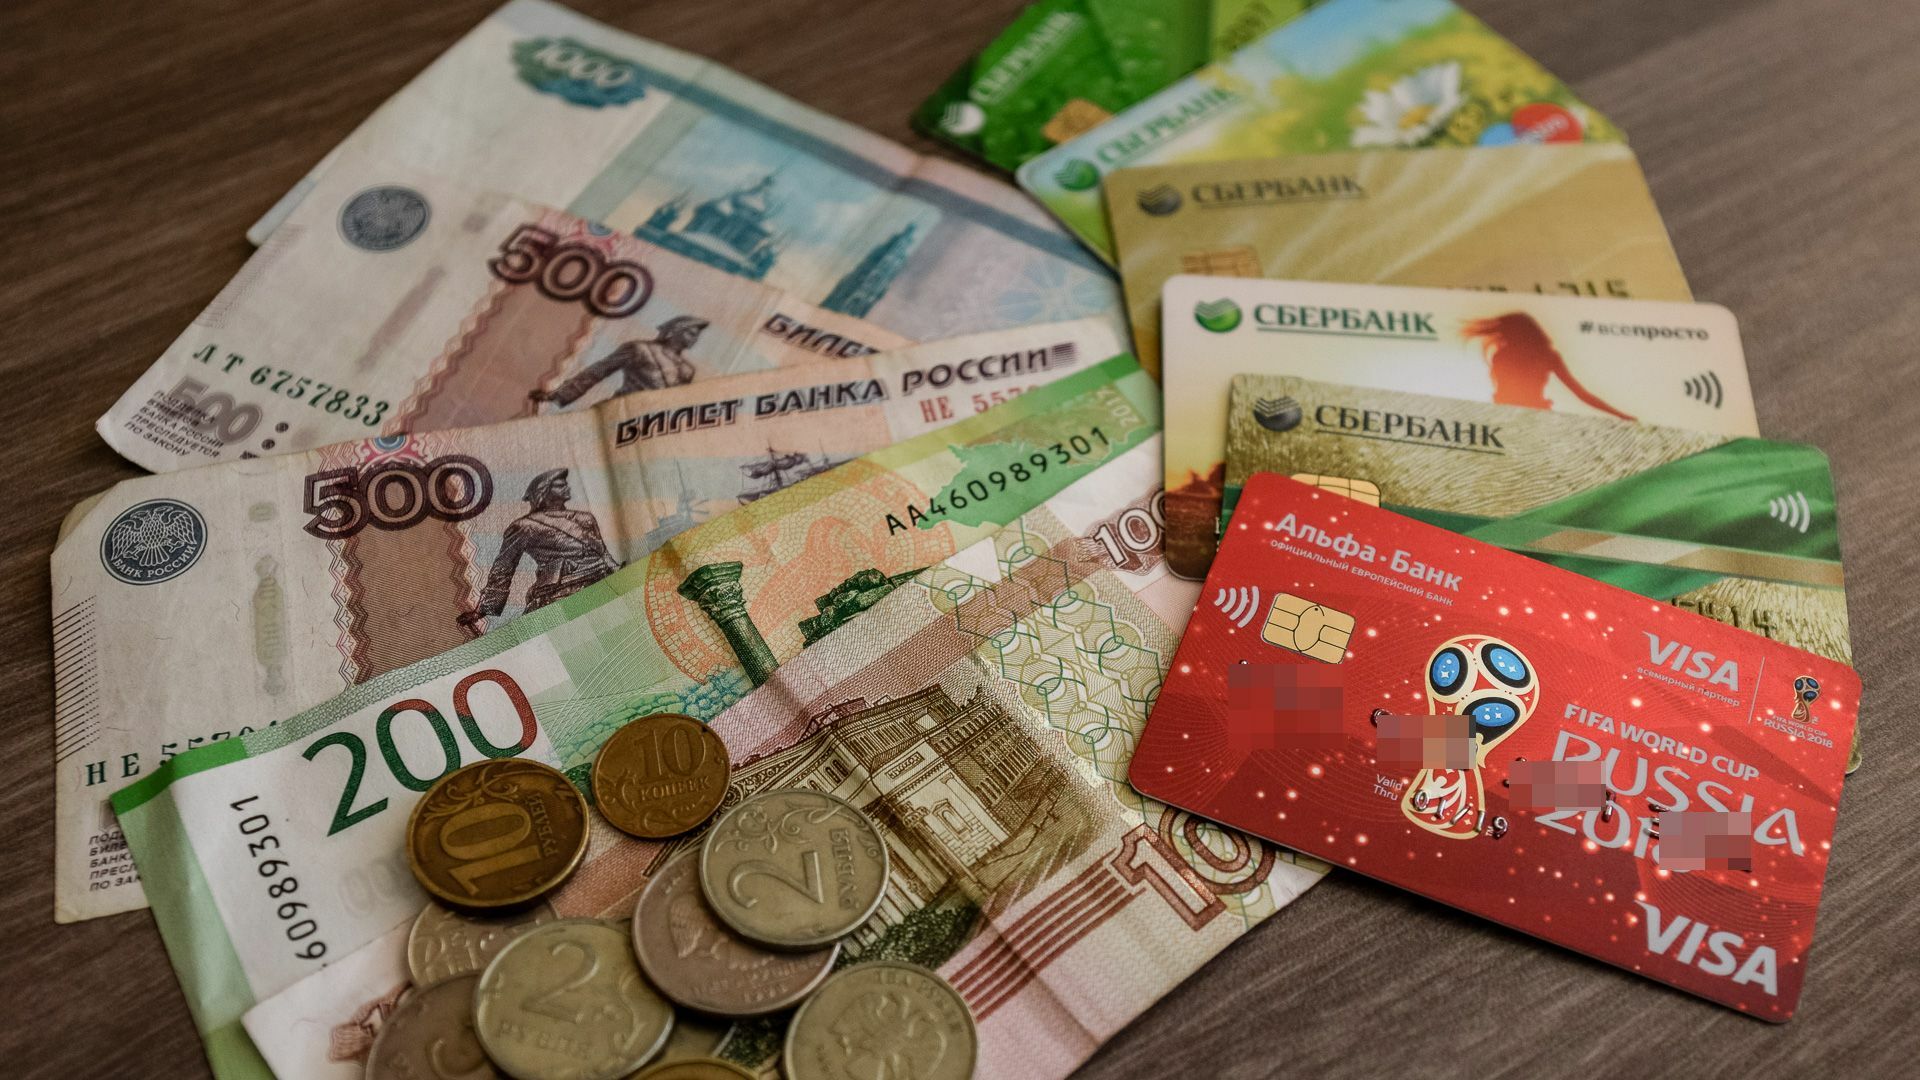 Объём вкладов в банках Приморья достиг 77 миллиардов рублей